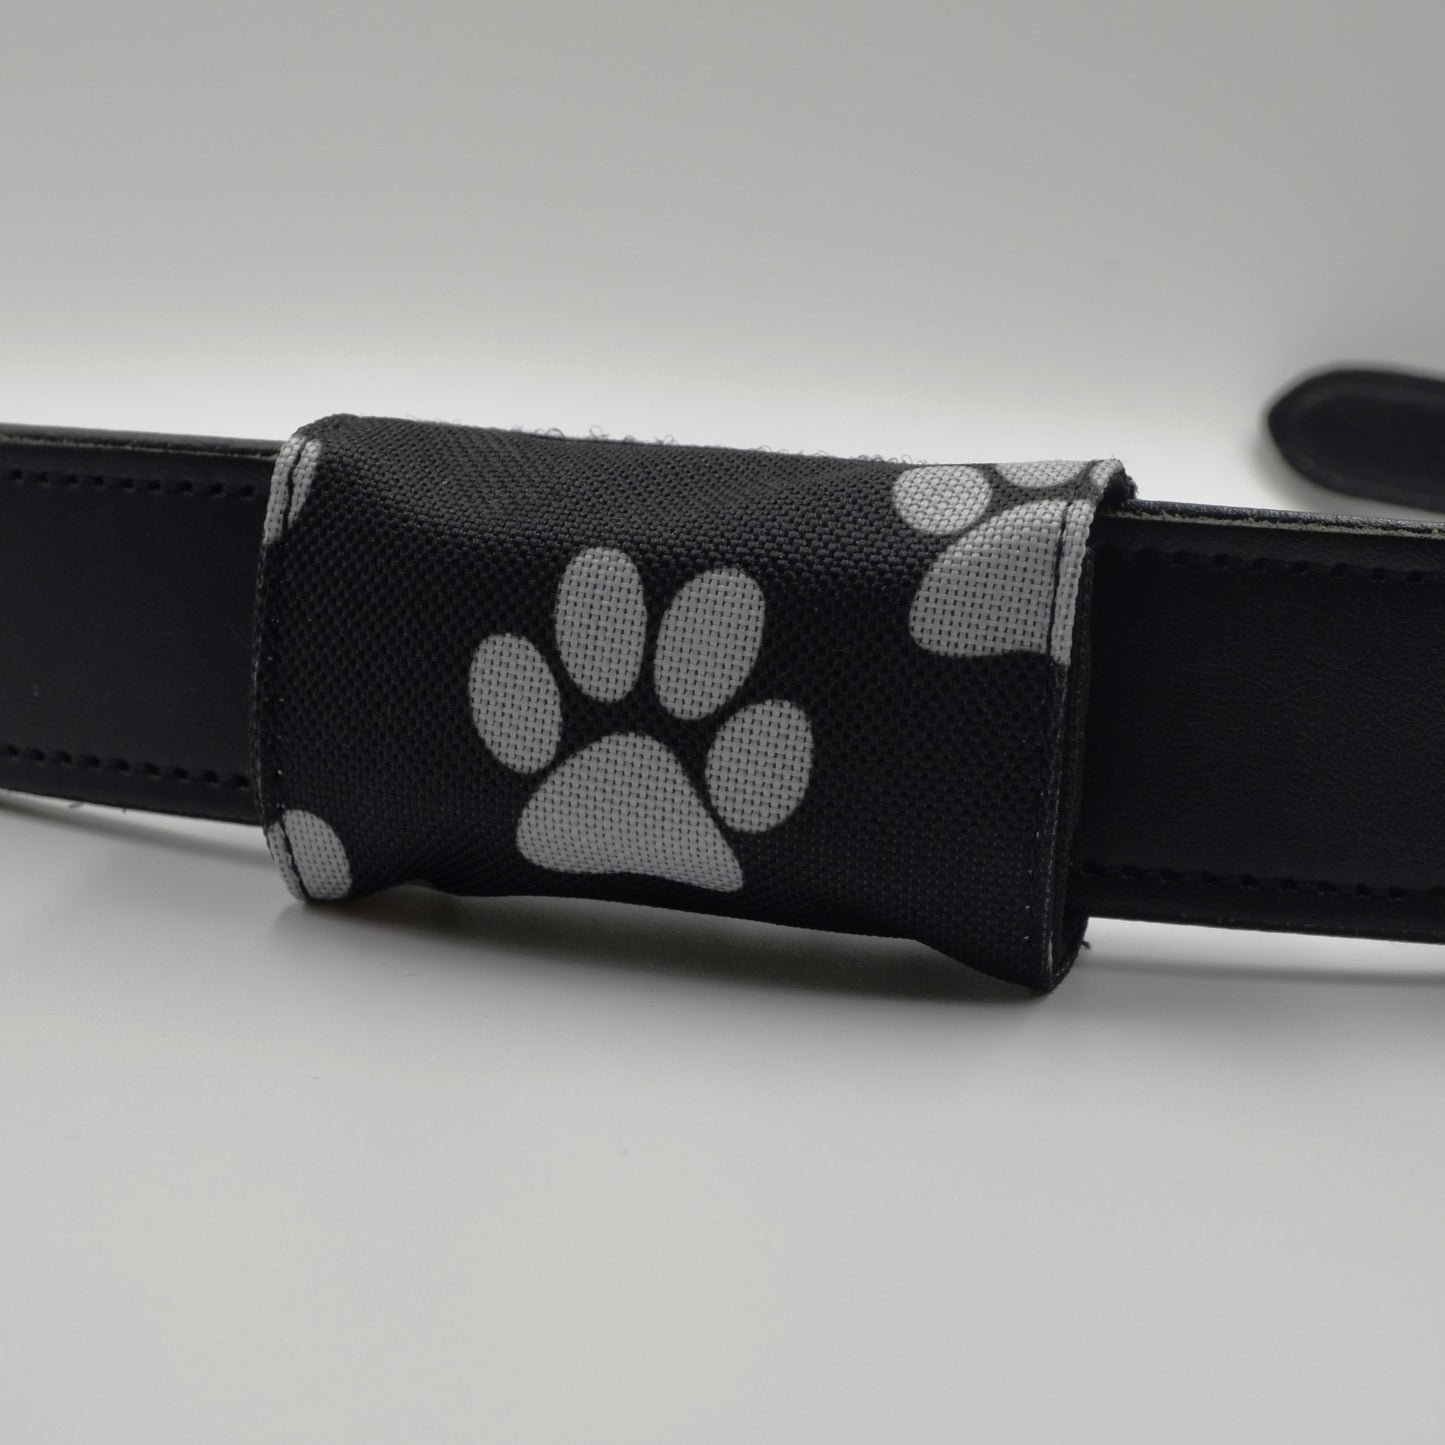 josi.li GPS Tracker Tasche für Hunde - für Tractive Tracker - einfache und effektive Trackerhülle aus Nylon, schwimmtauglich